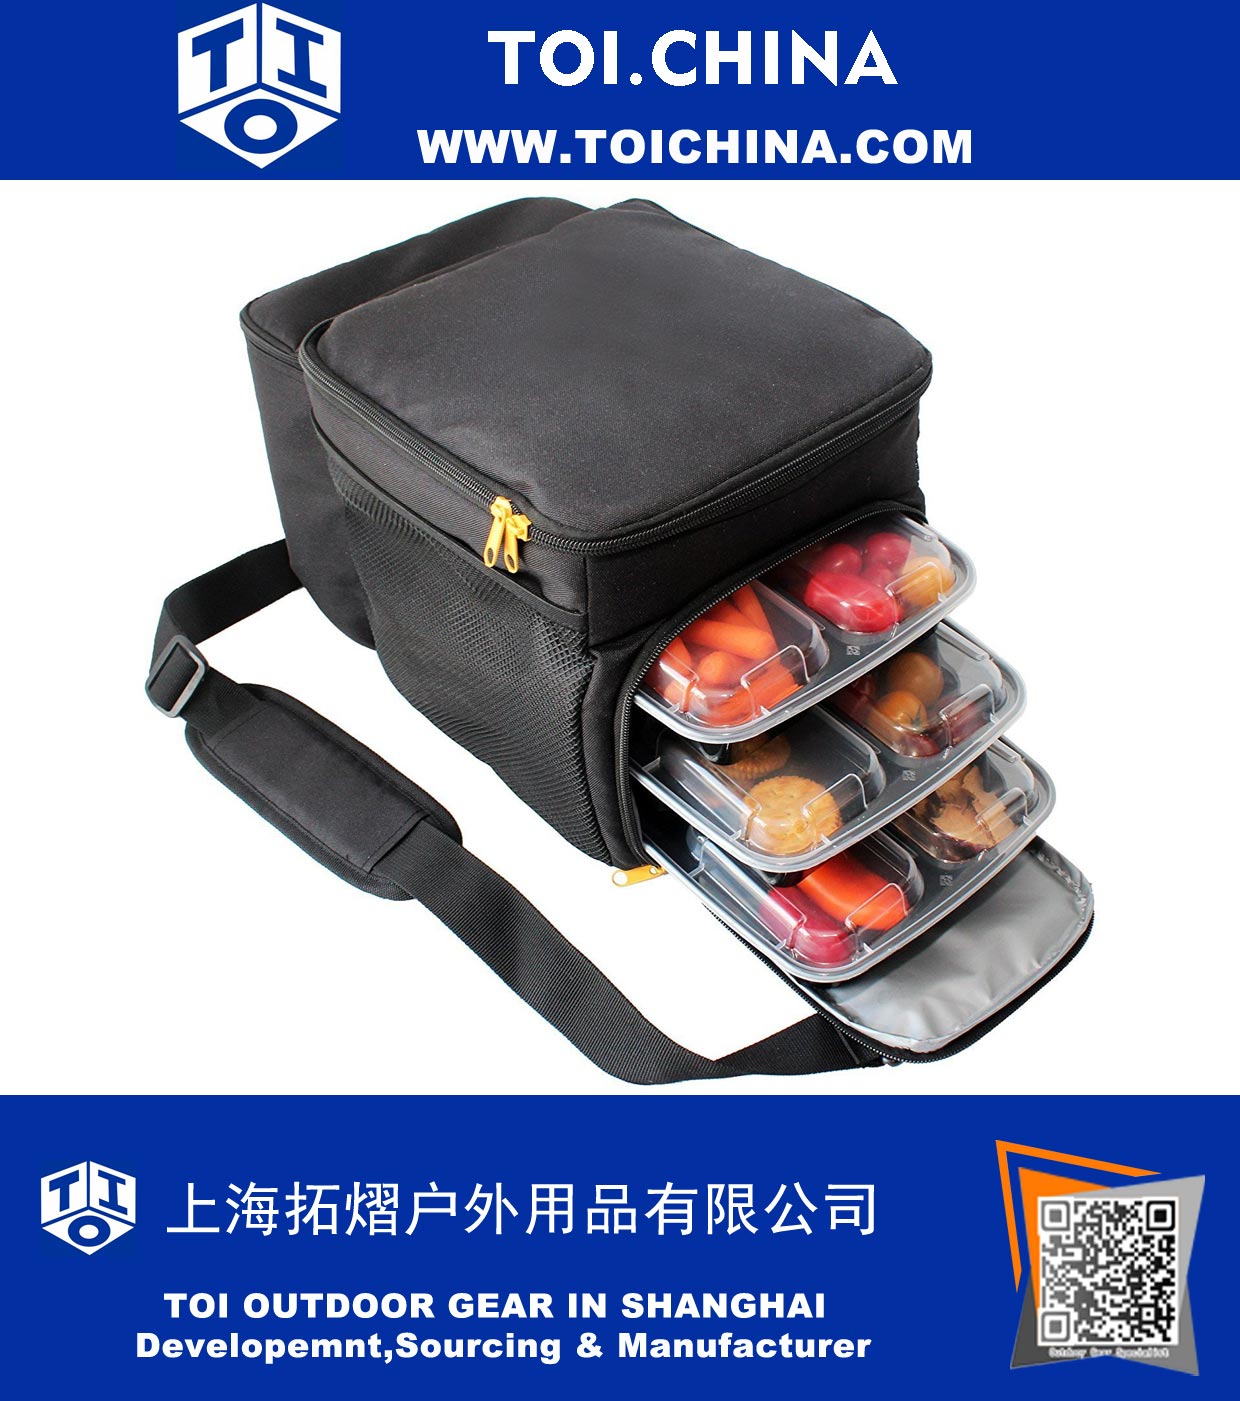 Resfriador para Refeições e Bolsa de Viagem com 6 Recipientes Multi Compartimento de Controle de Porções (3 na bolsa e 3 extra) e Bolsa de Gelo